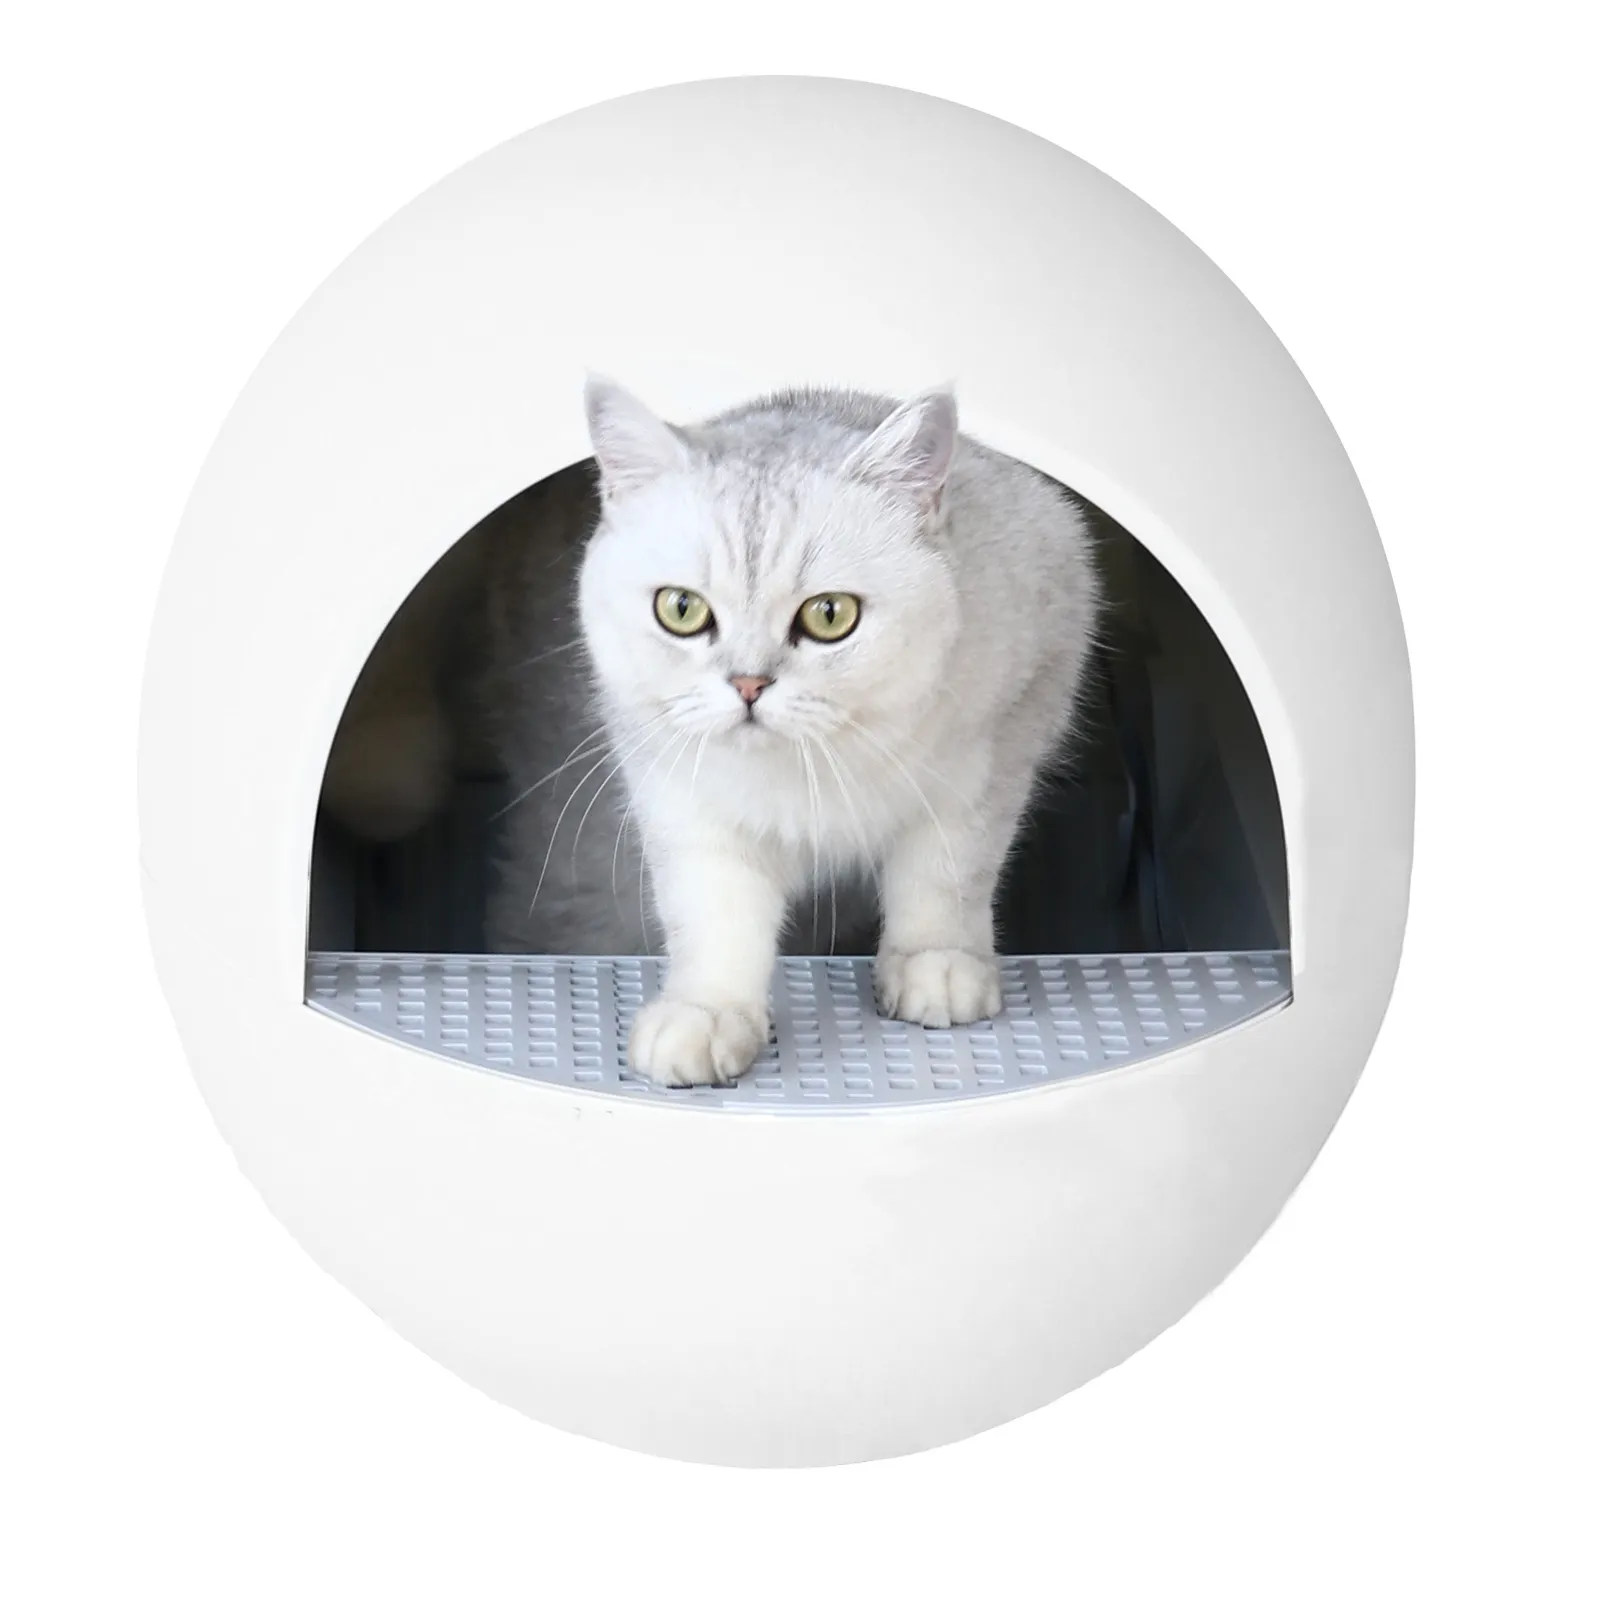 Cubierta clara del animal doméstico portátil limpiar baño para mascotas gato auto limpieza de plástico de caja de arena para gatos de limpieza